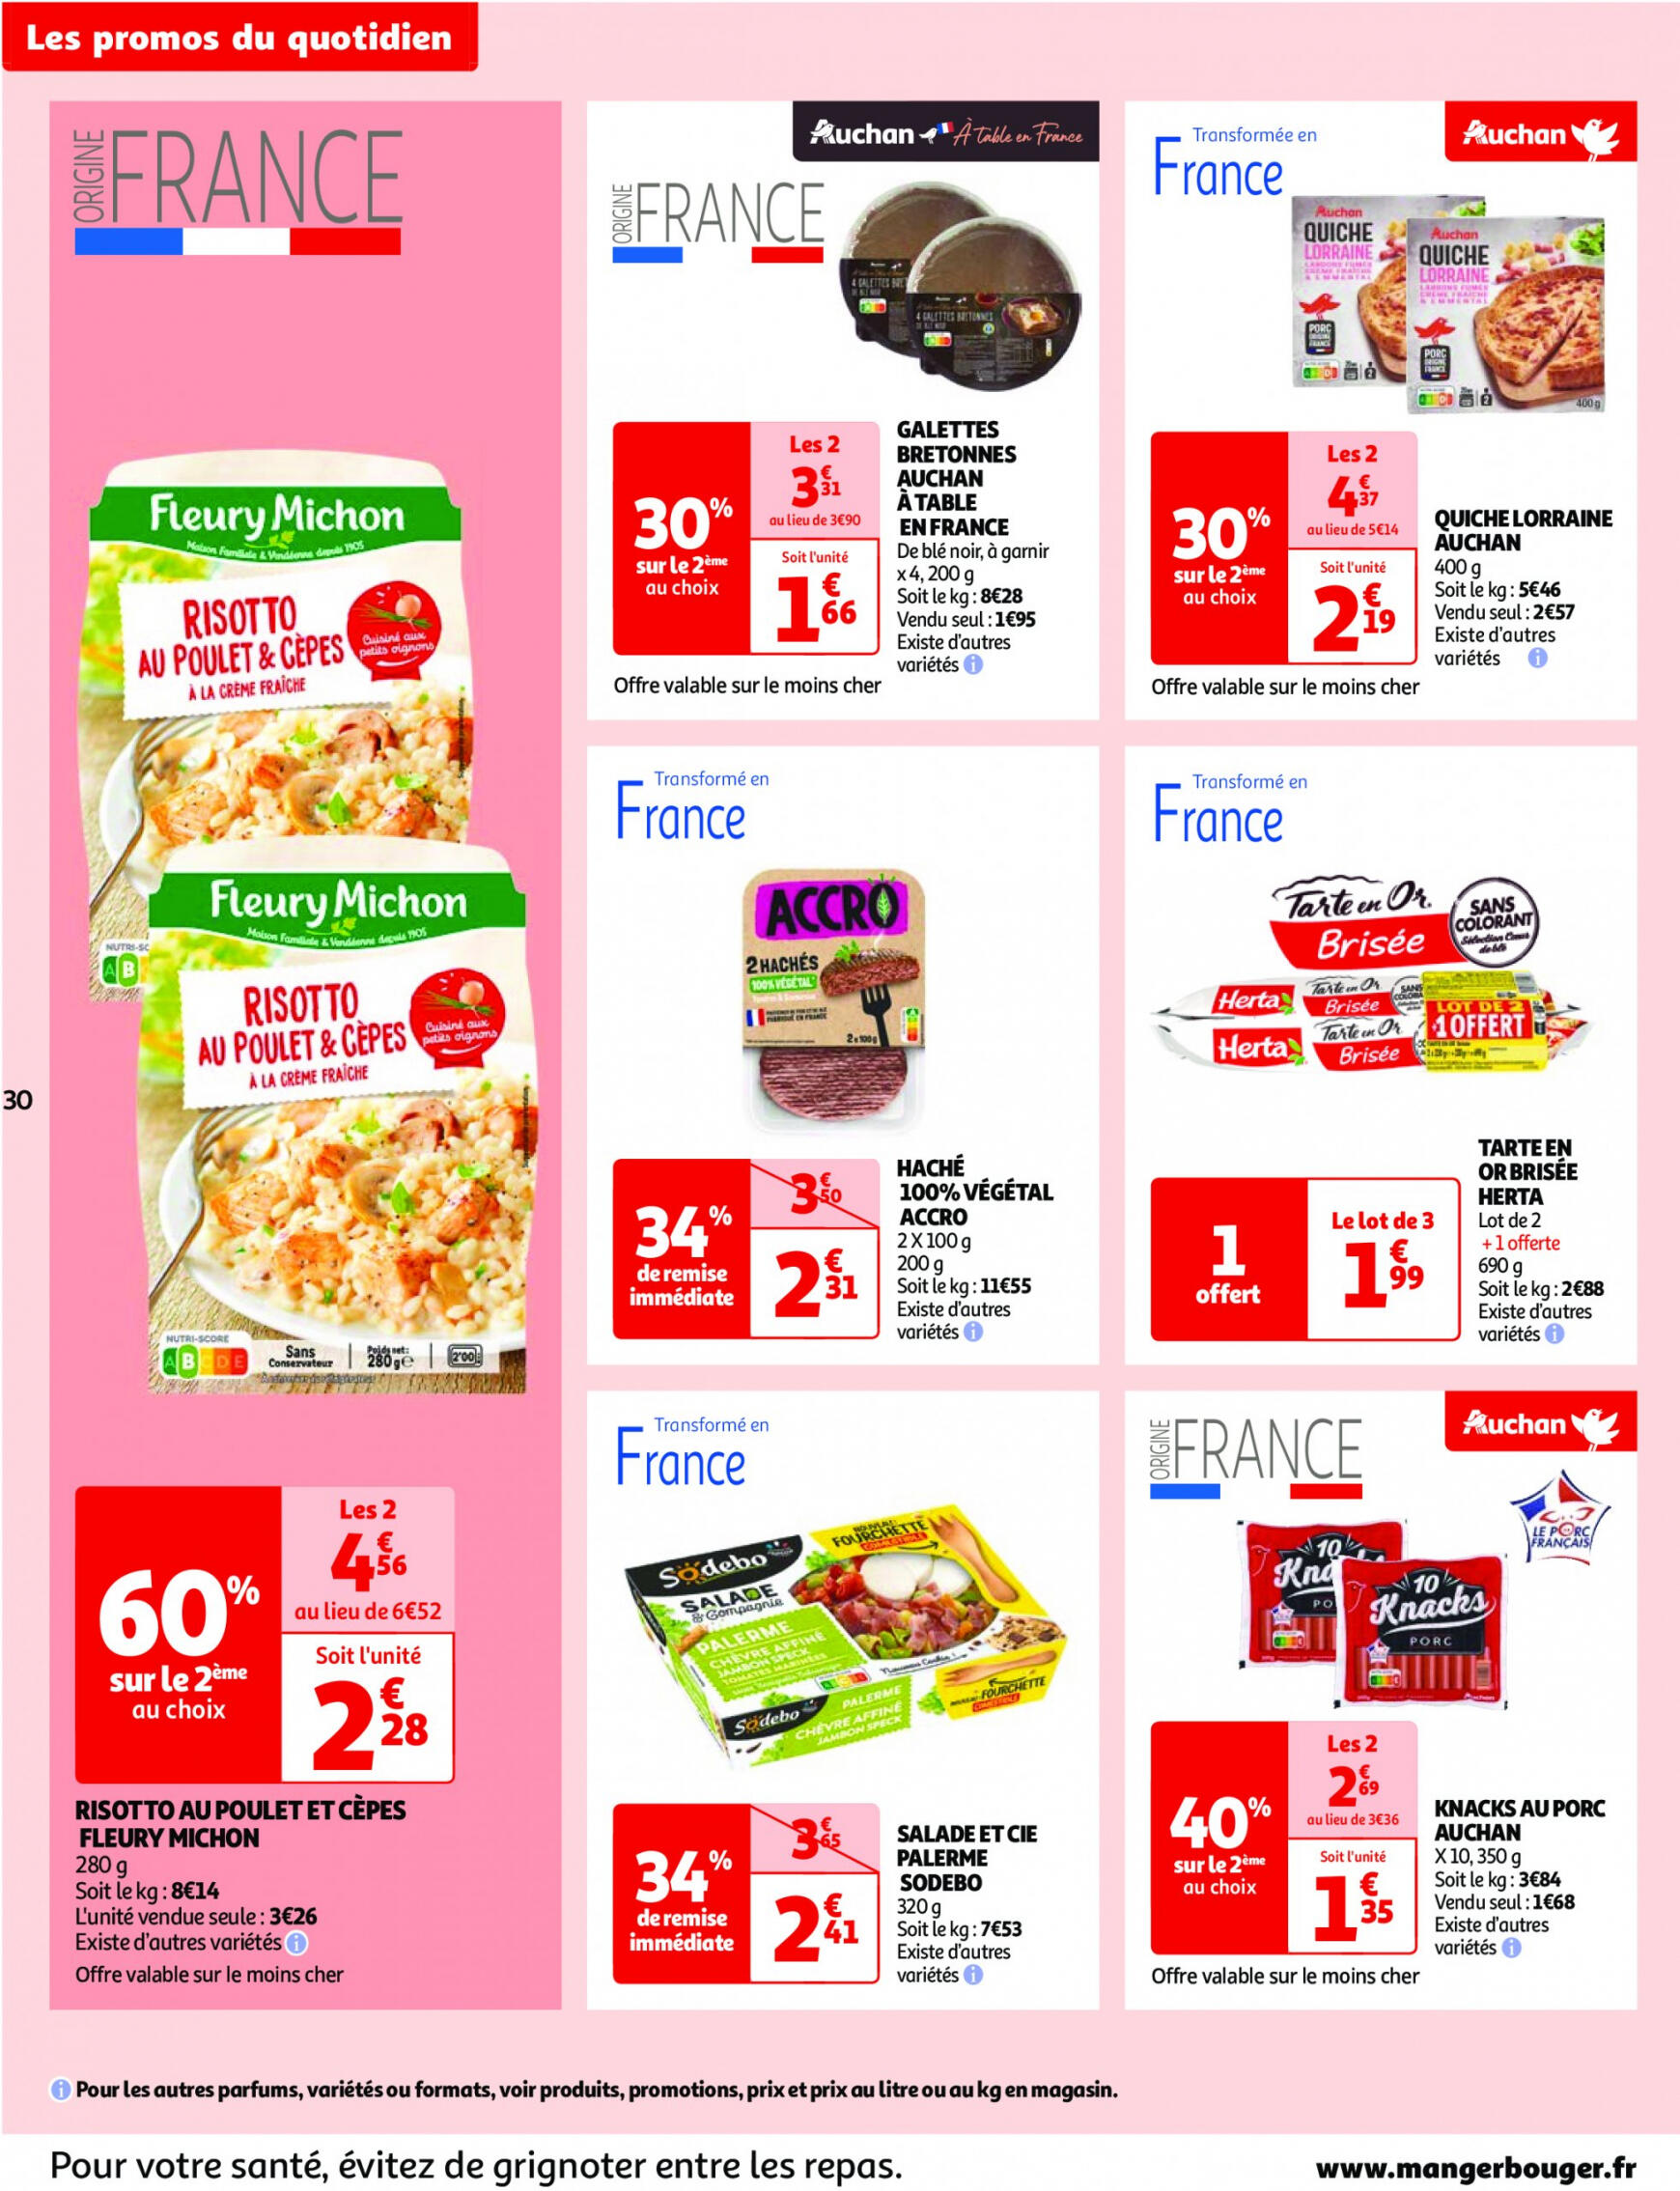 auchan - Auchan - Nos surgelés ont tout bon folder huidig 14.05. - 21.05. - page: 30